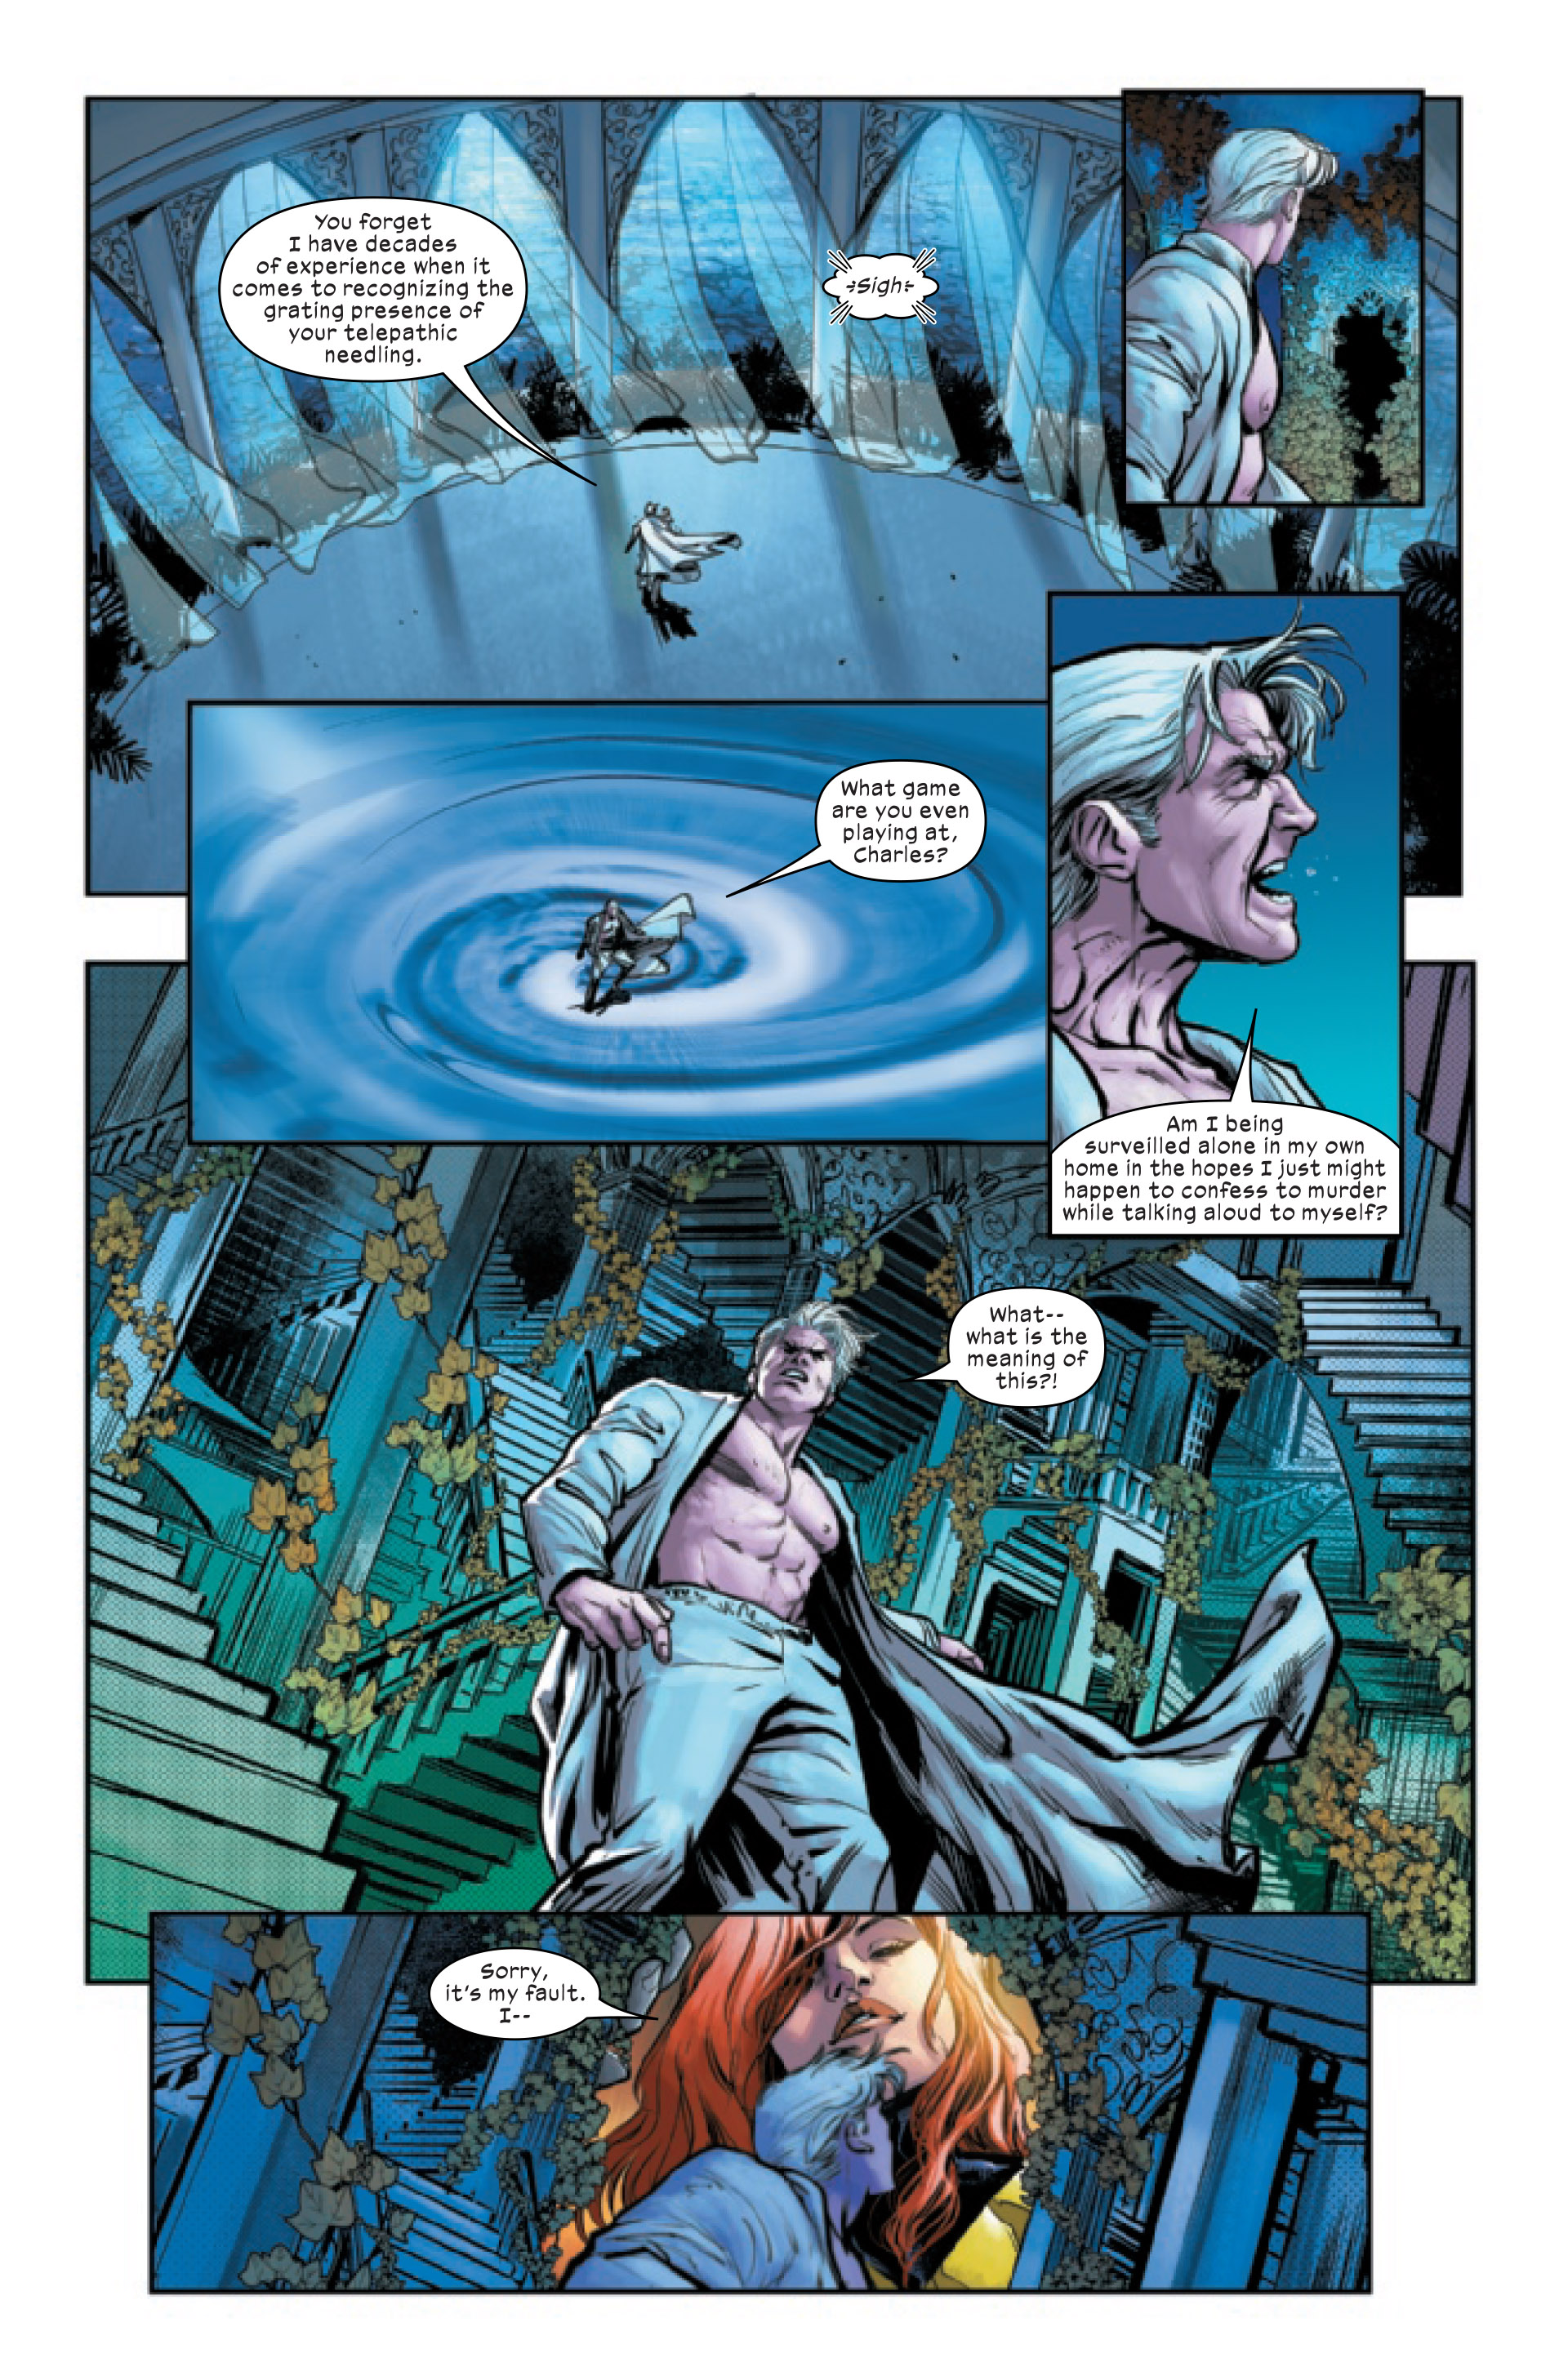 X-Men: Manyeto Denemesi #2